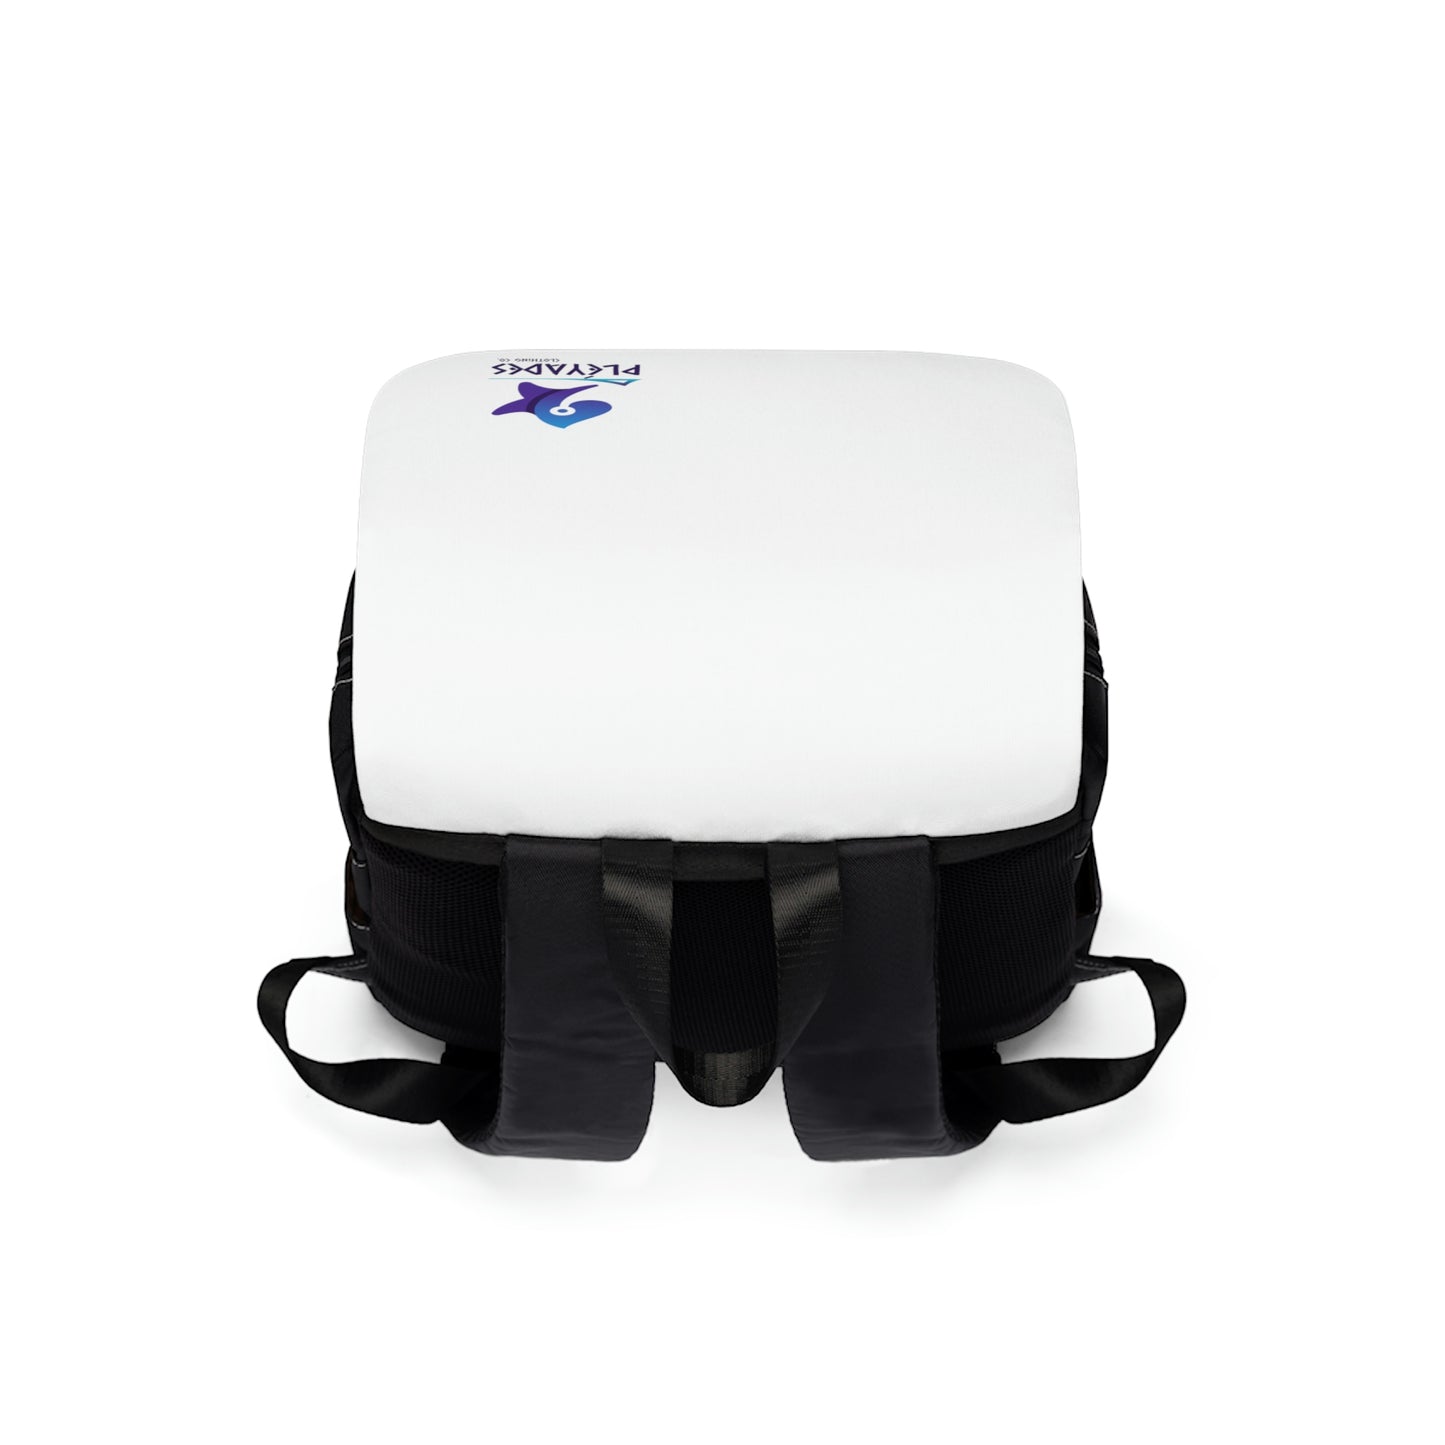 Whi/Blk Unisex Casual Shoulder Backpack